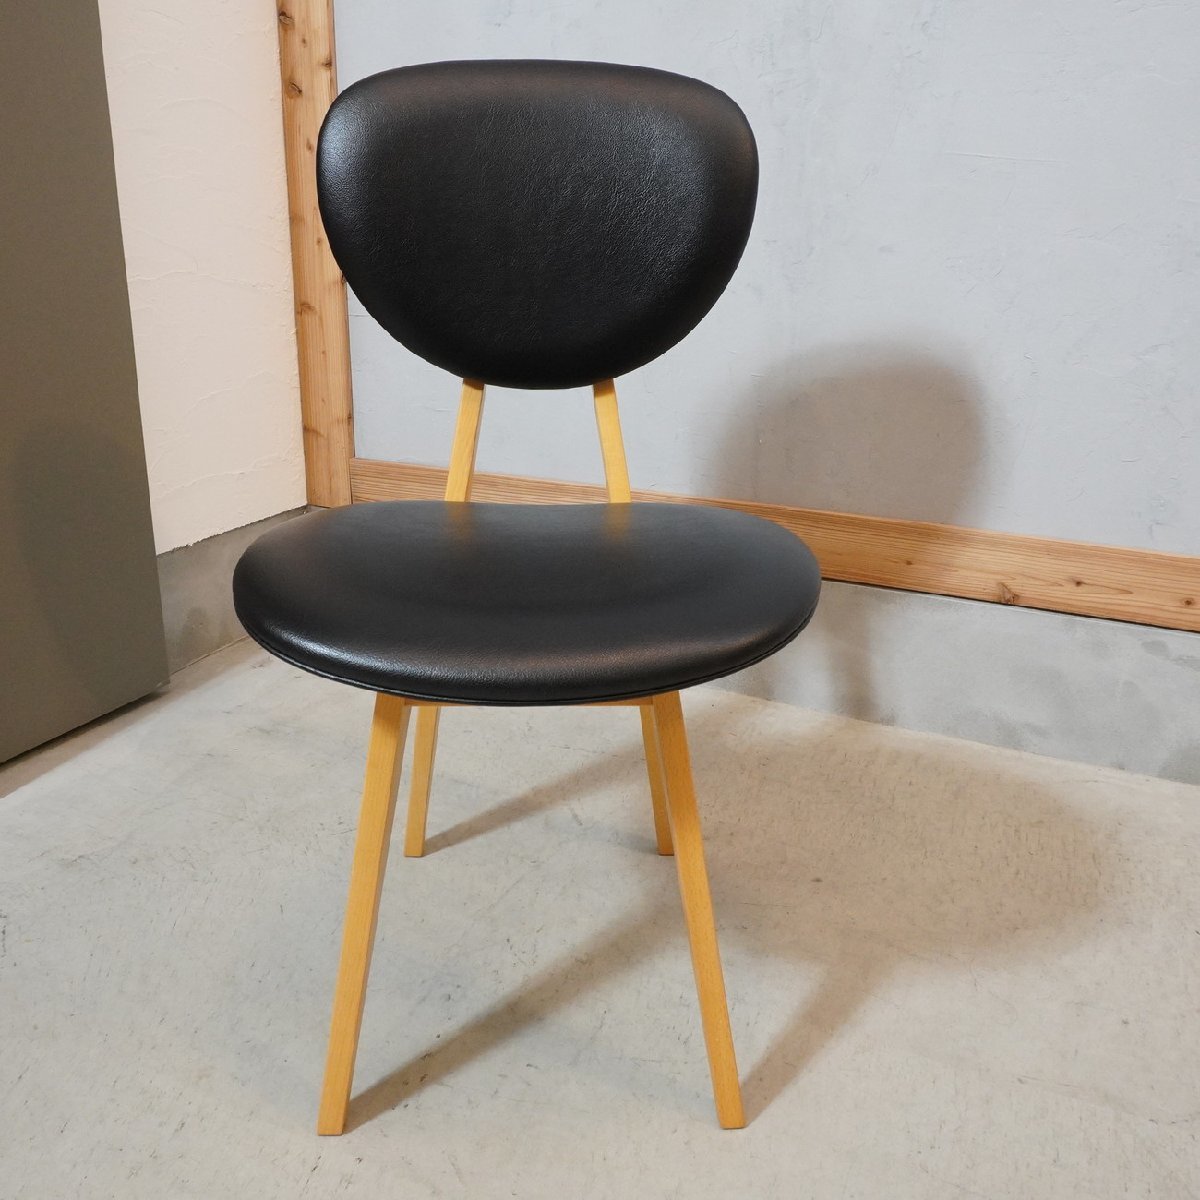 IDEE イデー ダイニングチェア 長大作 レトロモダン 木製椅子 北欧スタイル ナチュラル シンプル サイドチェア プライウッド EA320_画像2